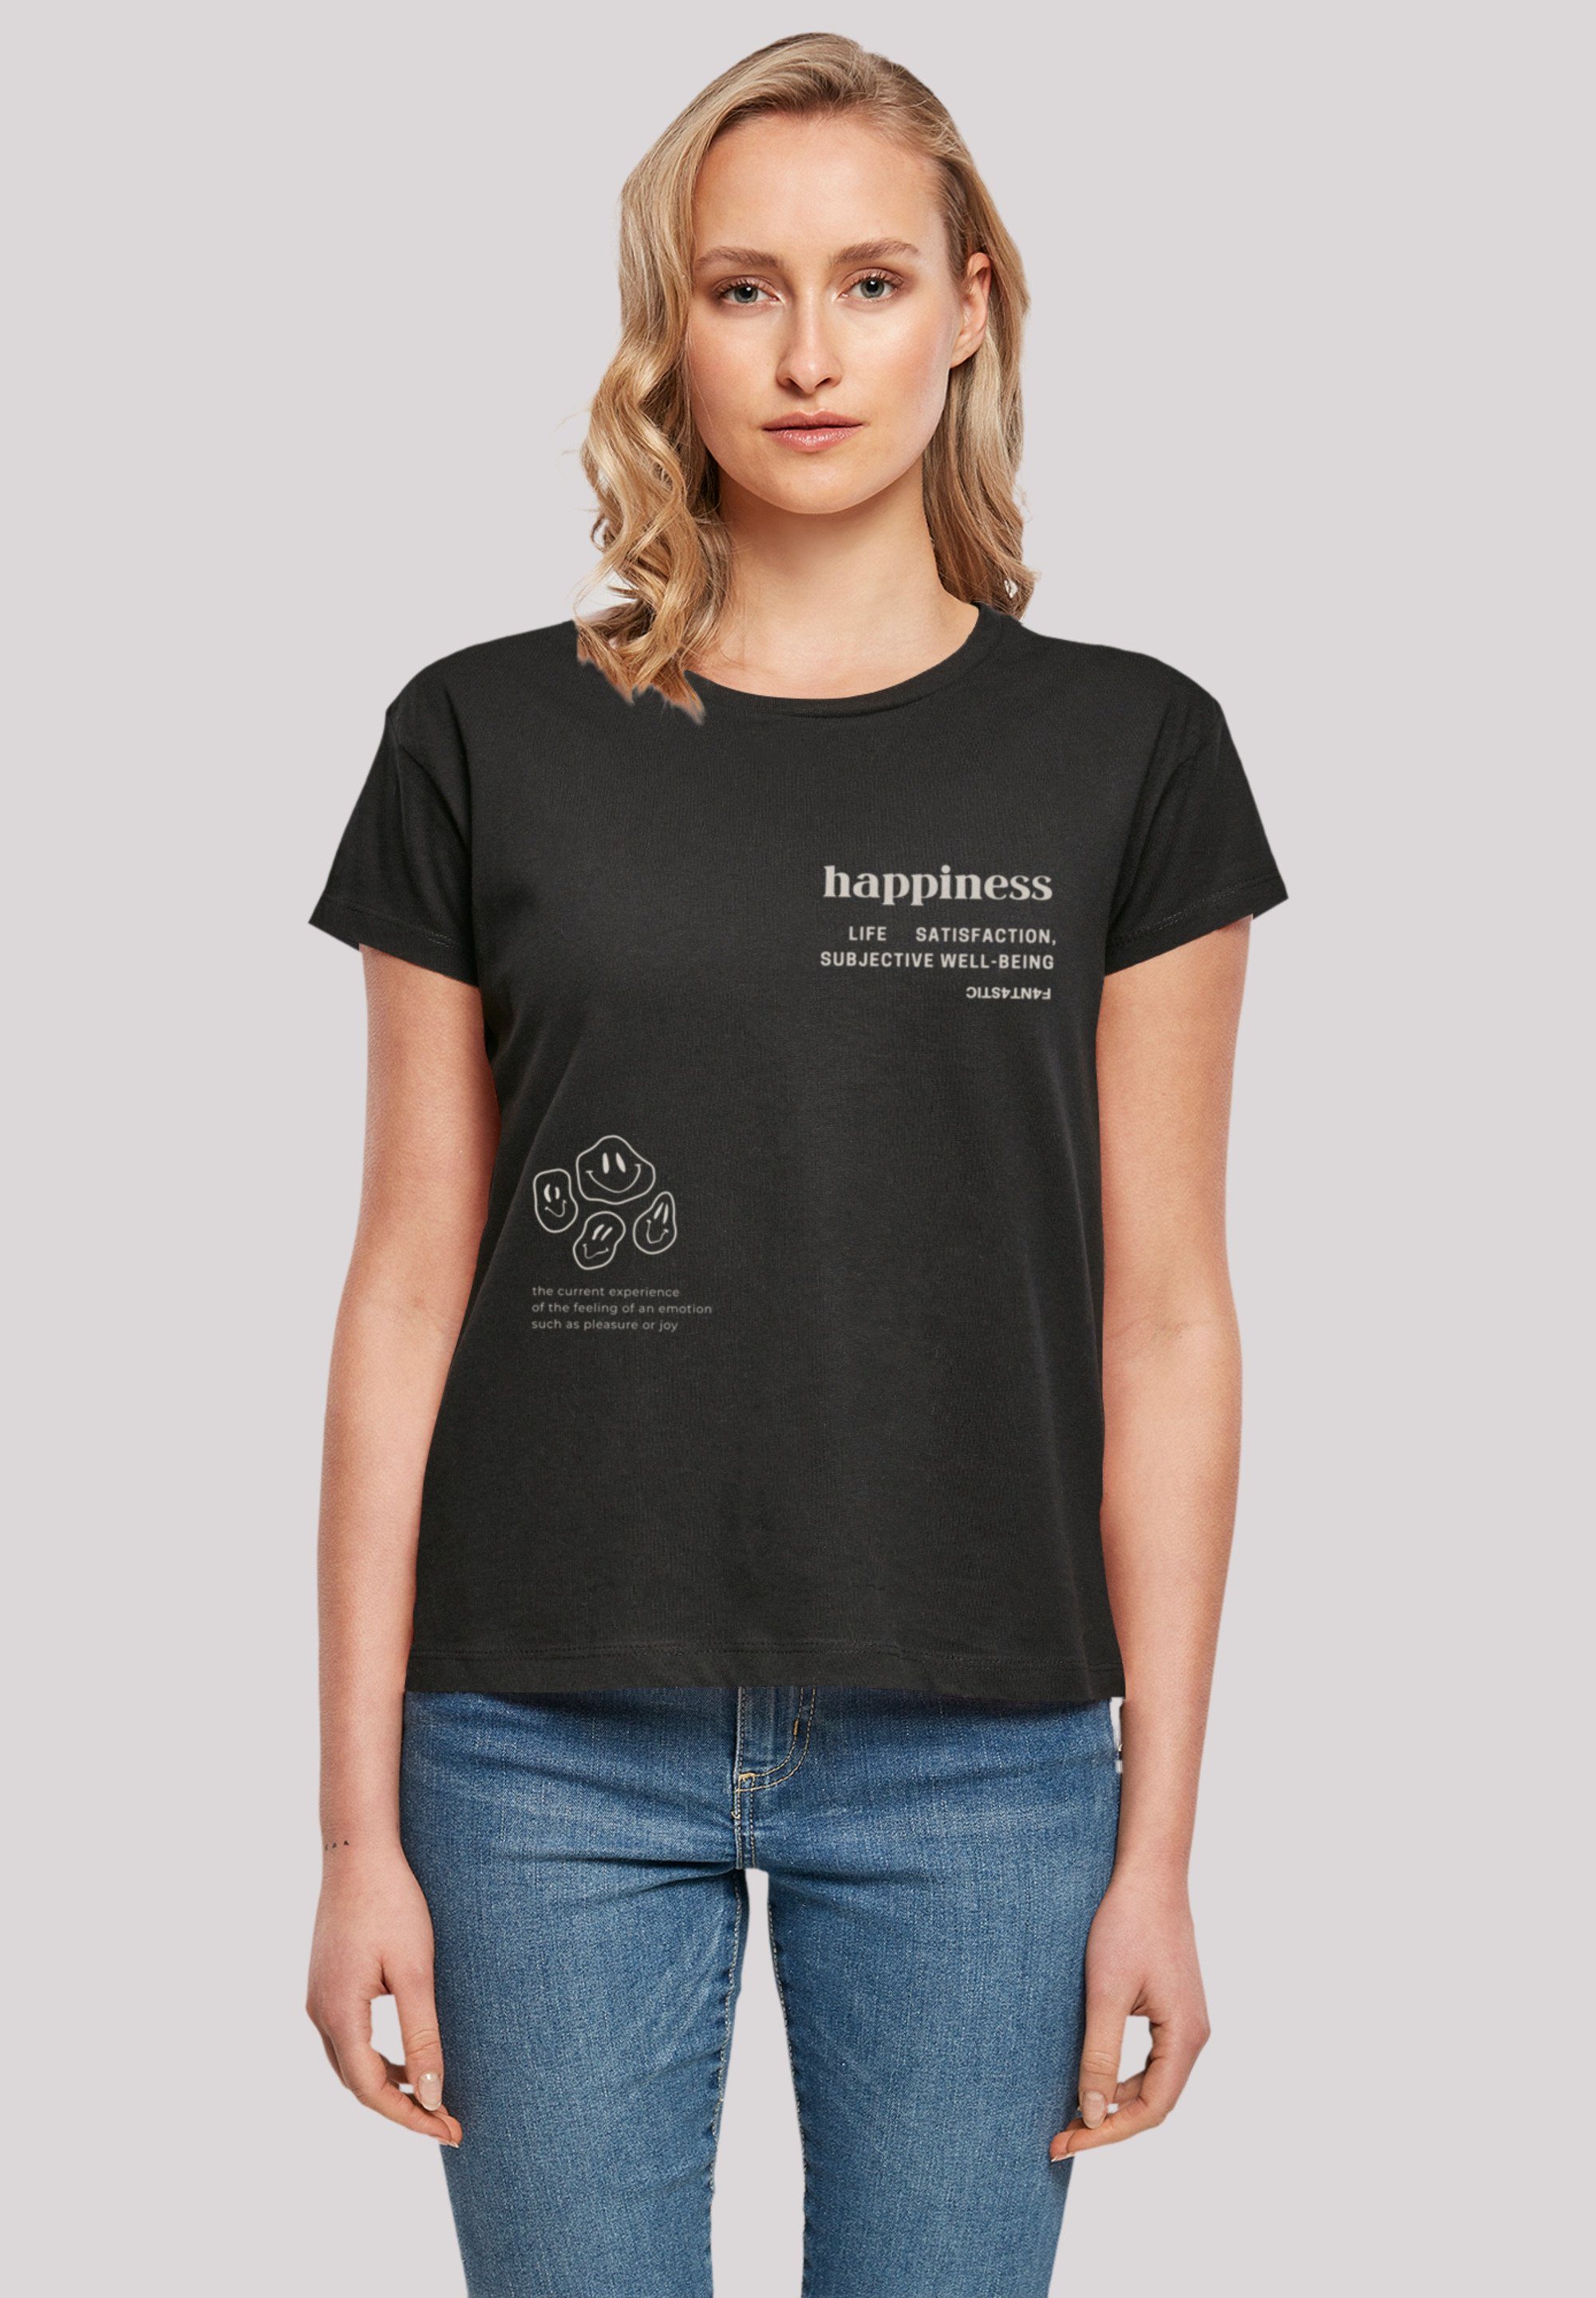 eine weit aus, bitte Größe kleiner bestellen T-Shirt Fällt happiness Print, F4NT4STIC